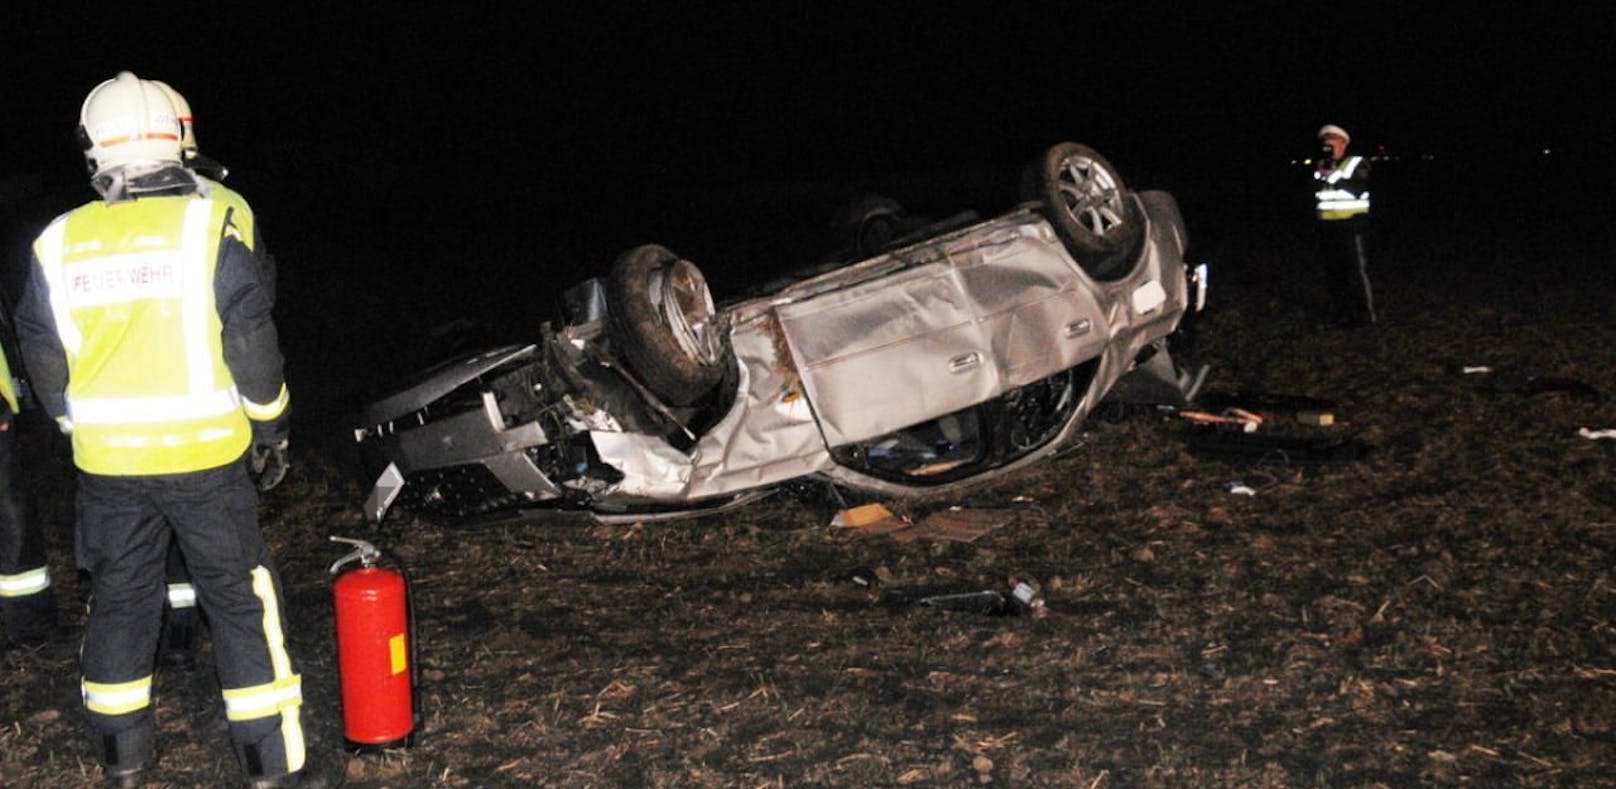 Crash: Mann tot, Frau leicht verletzt - wer war Lenker?